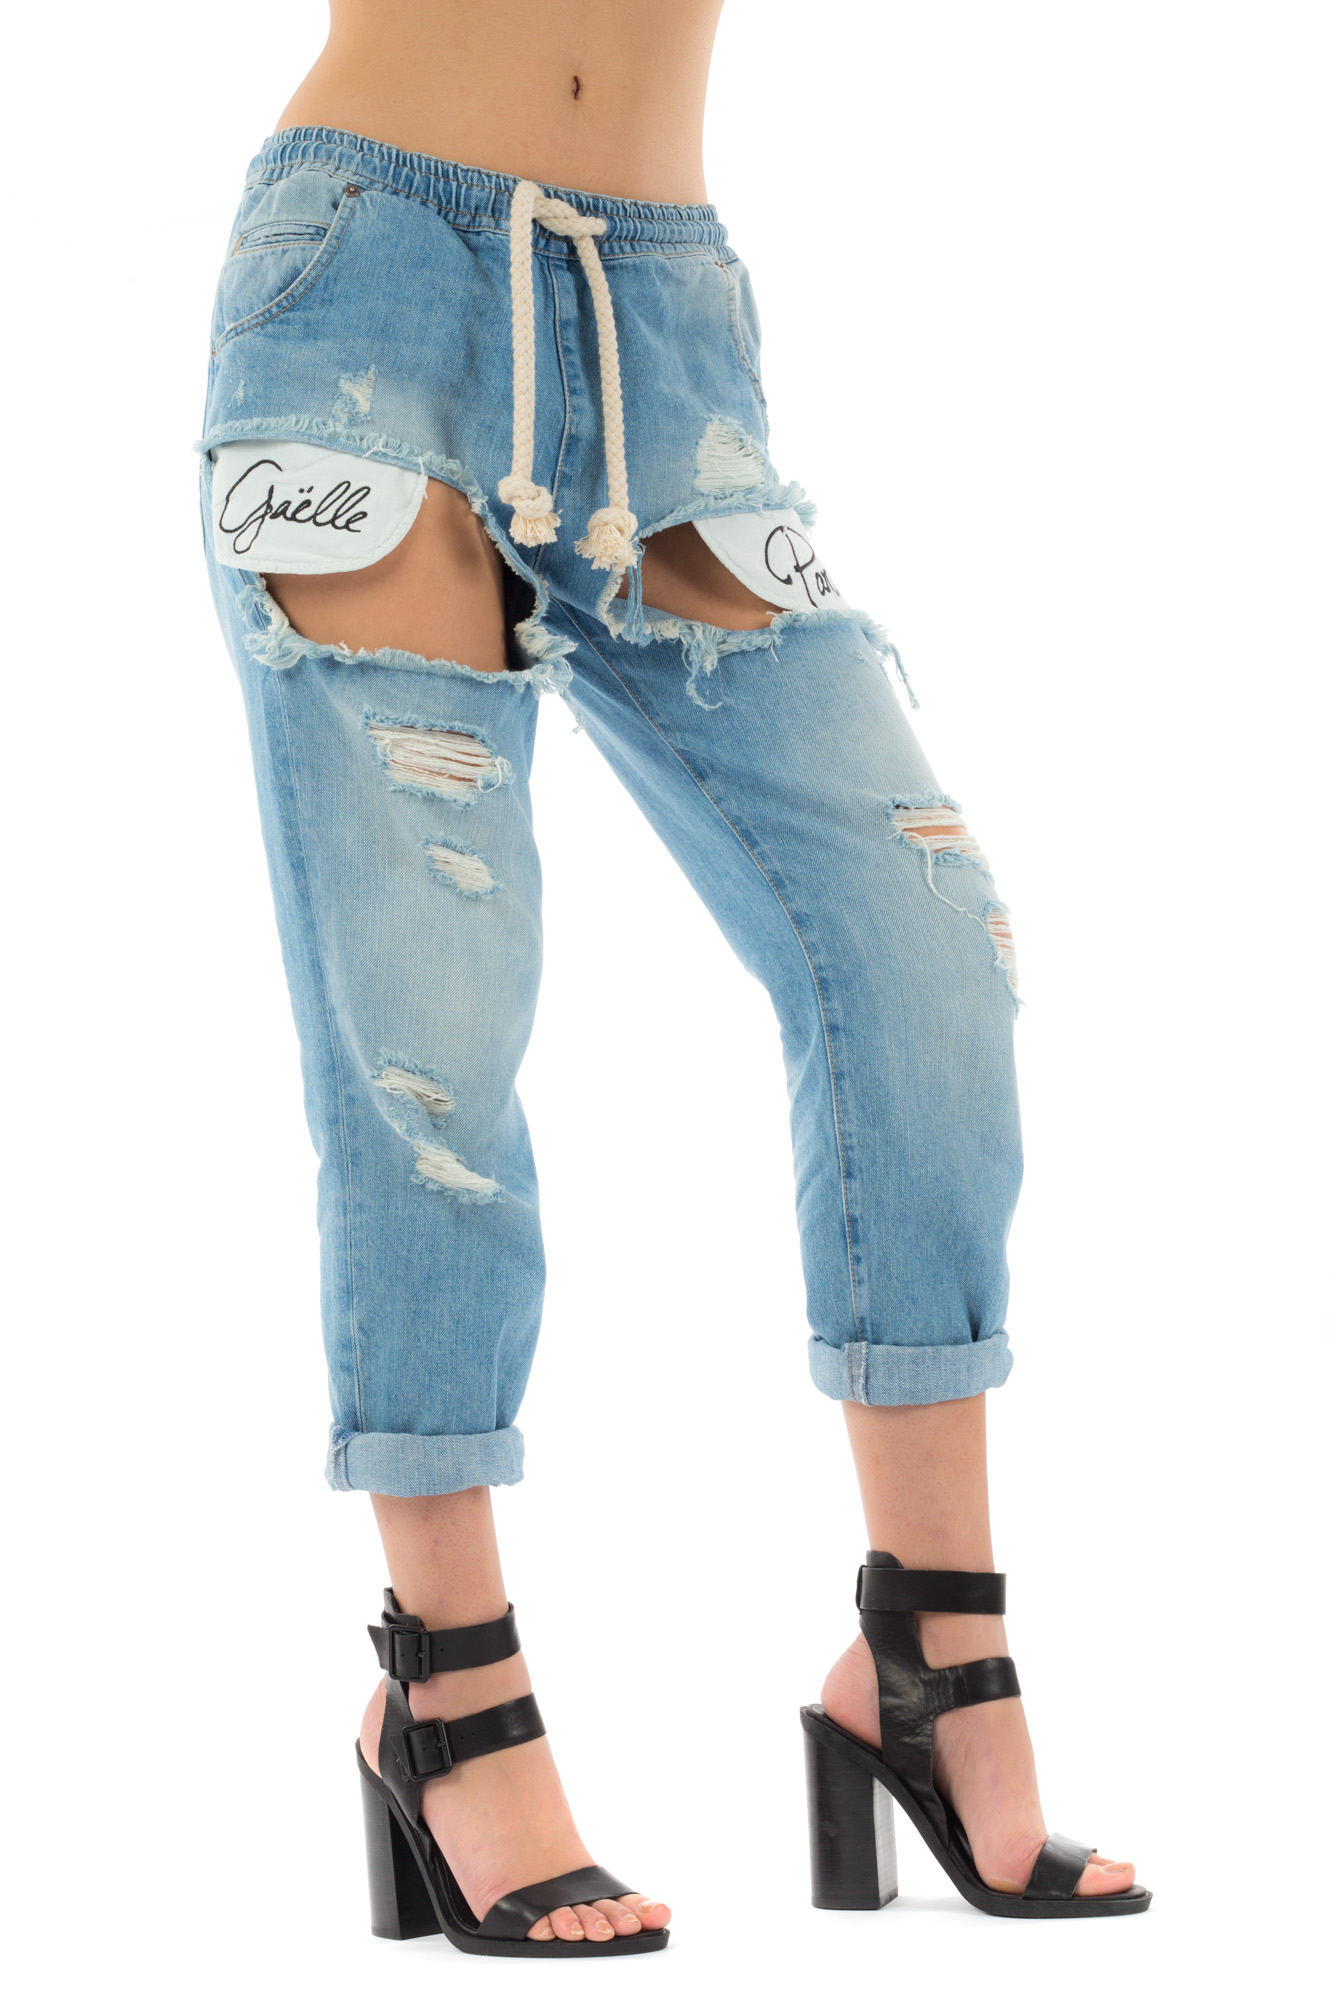 Gaelle - Jeans strappato con logo